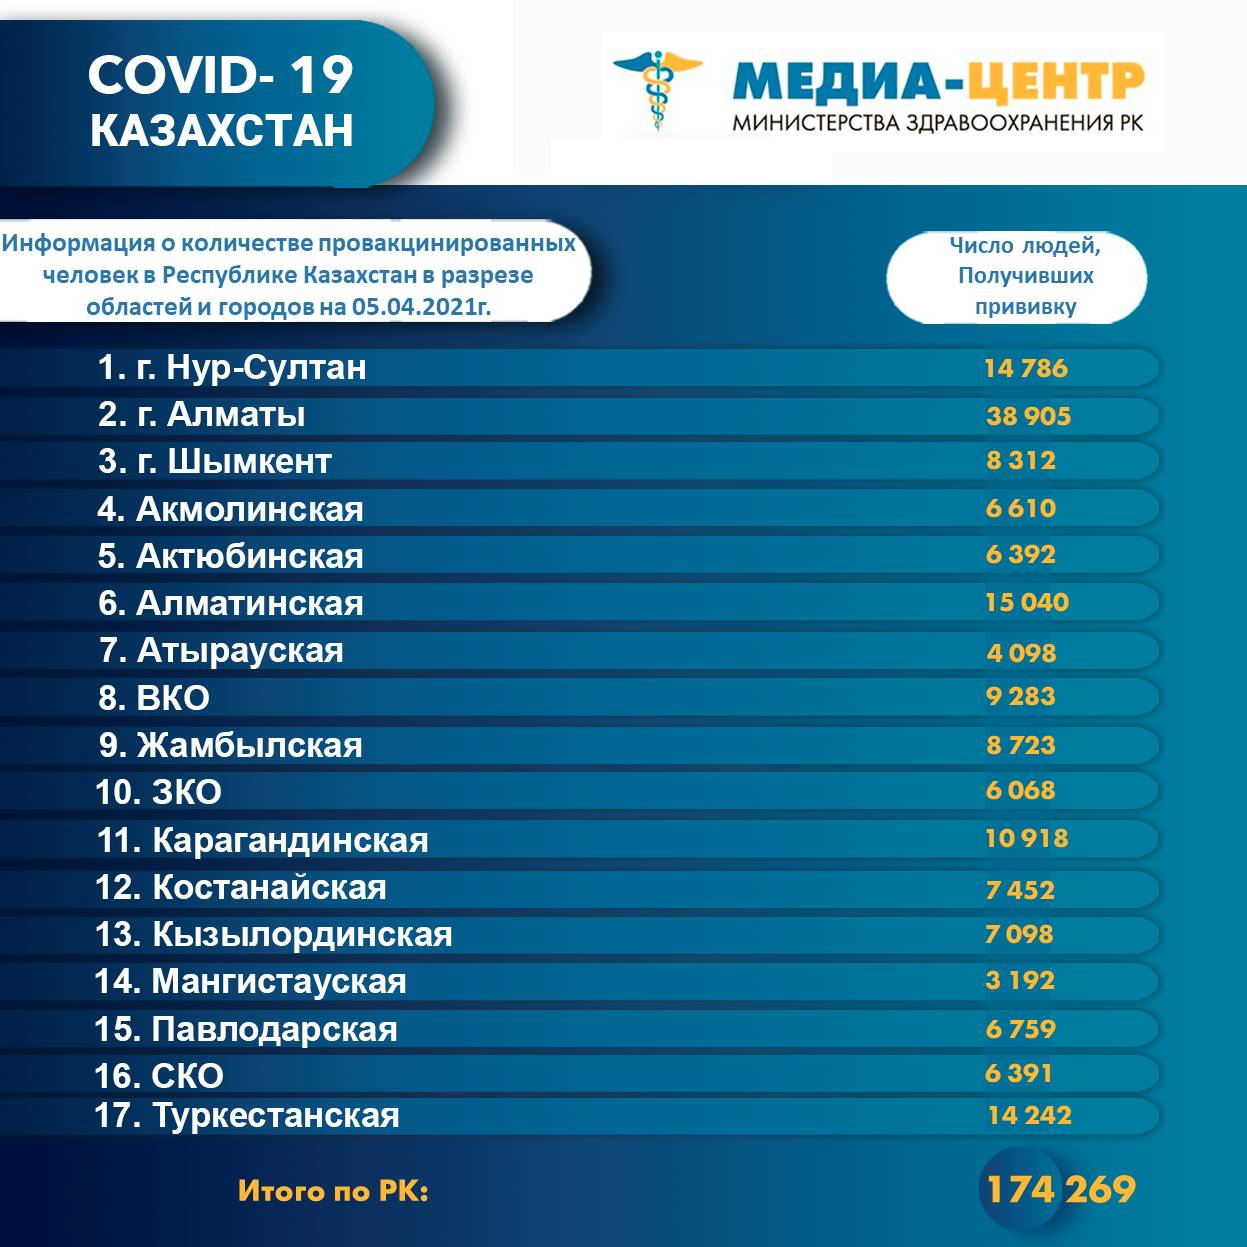 Информация о количестве провакцинированных человек в РК в разрезе областей и городов на 05.04.2021 г.